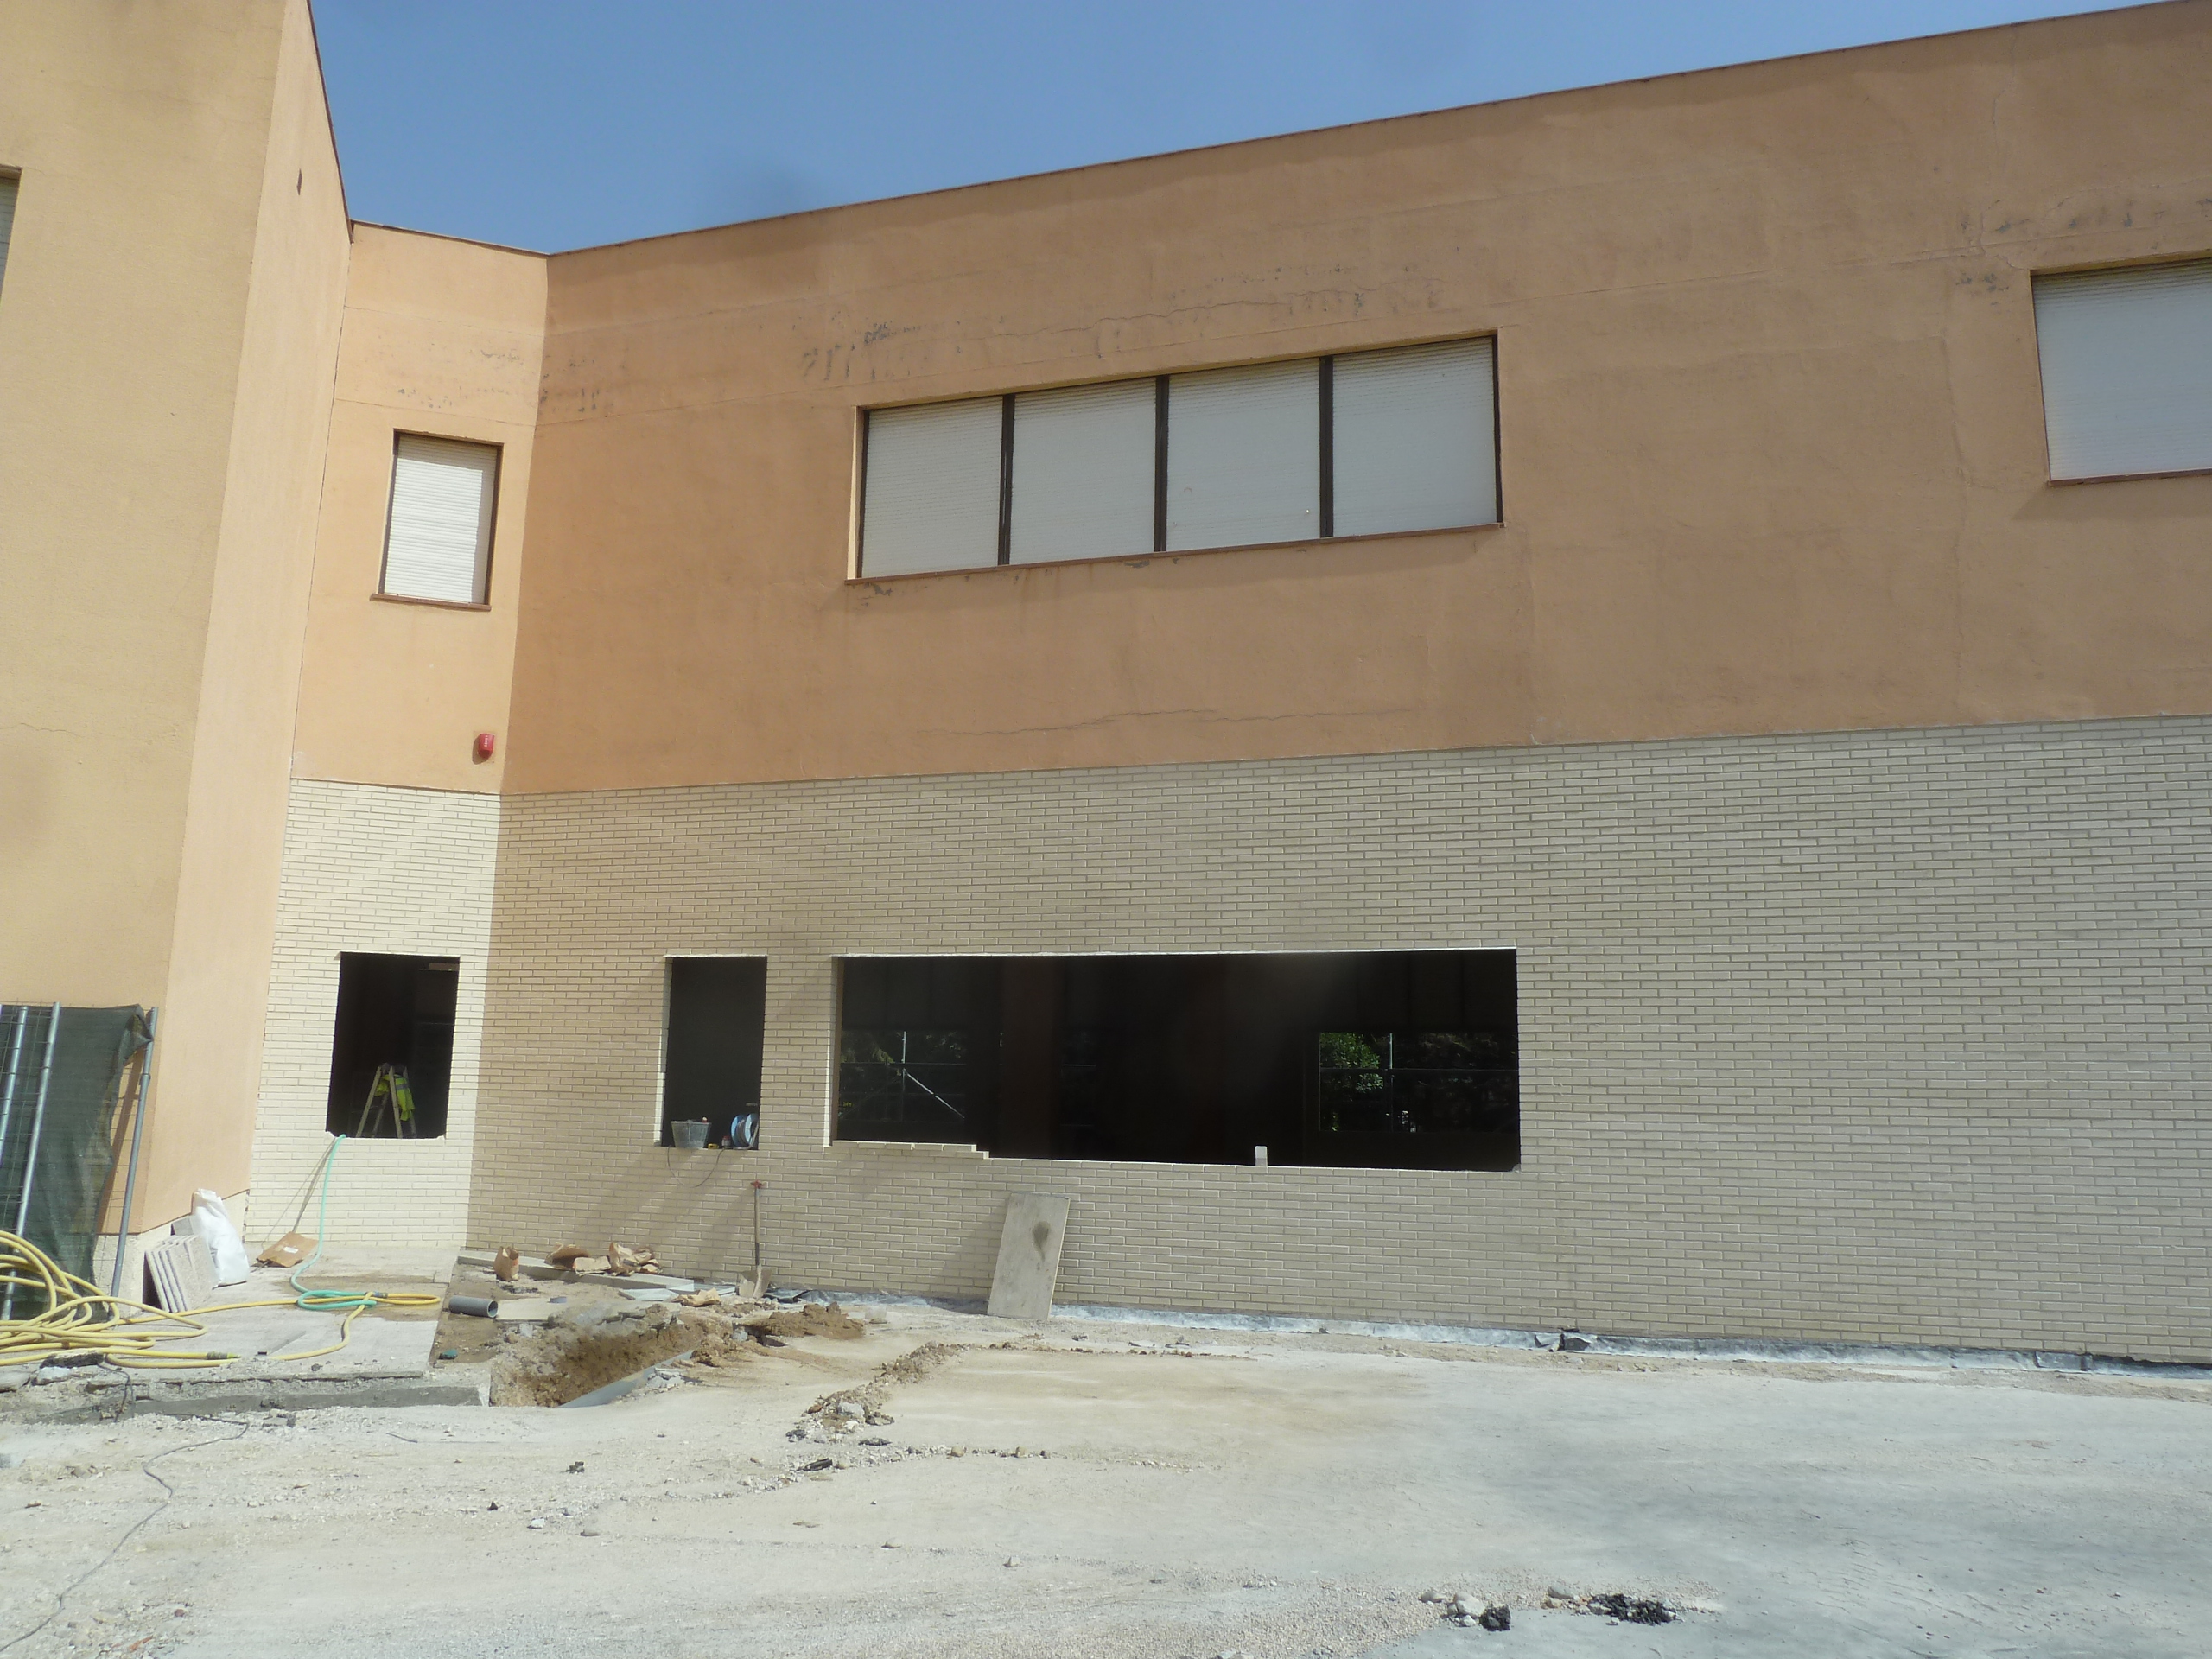 Proyecto de ampliación del colegio Alhucema en Madrid